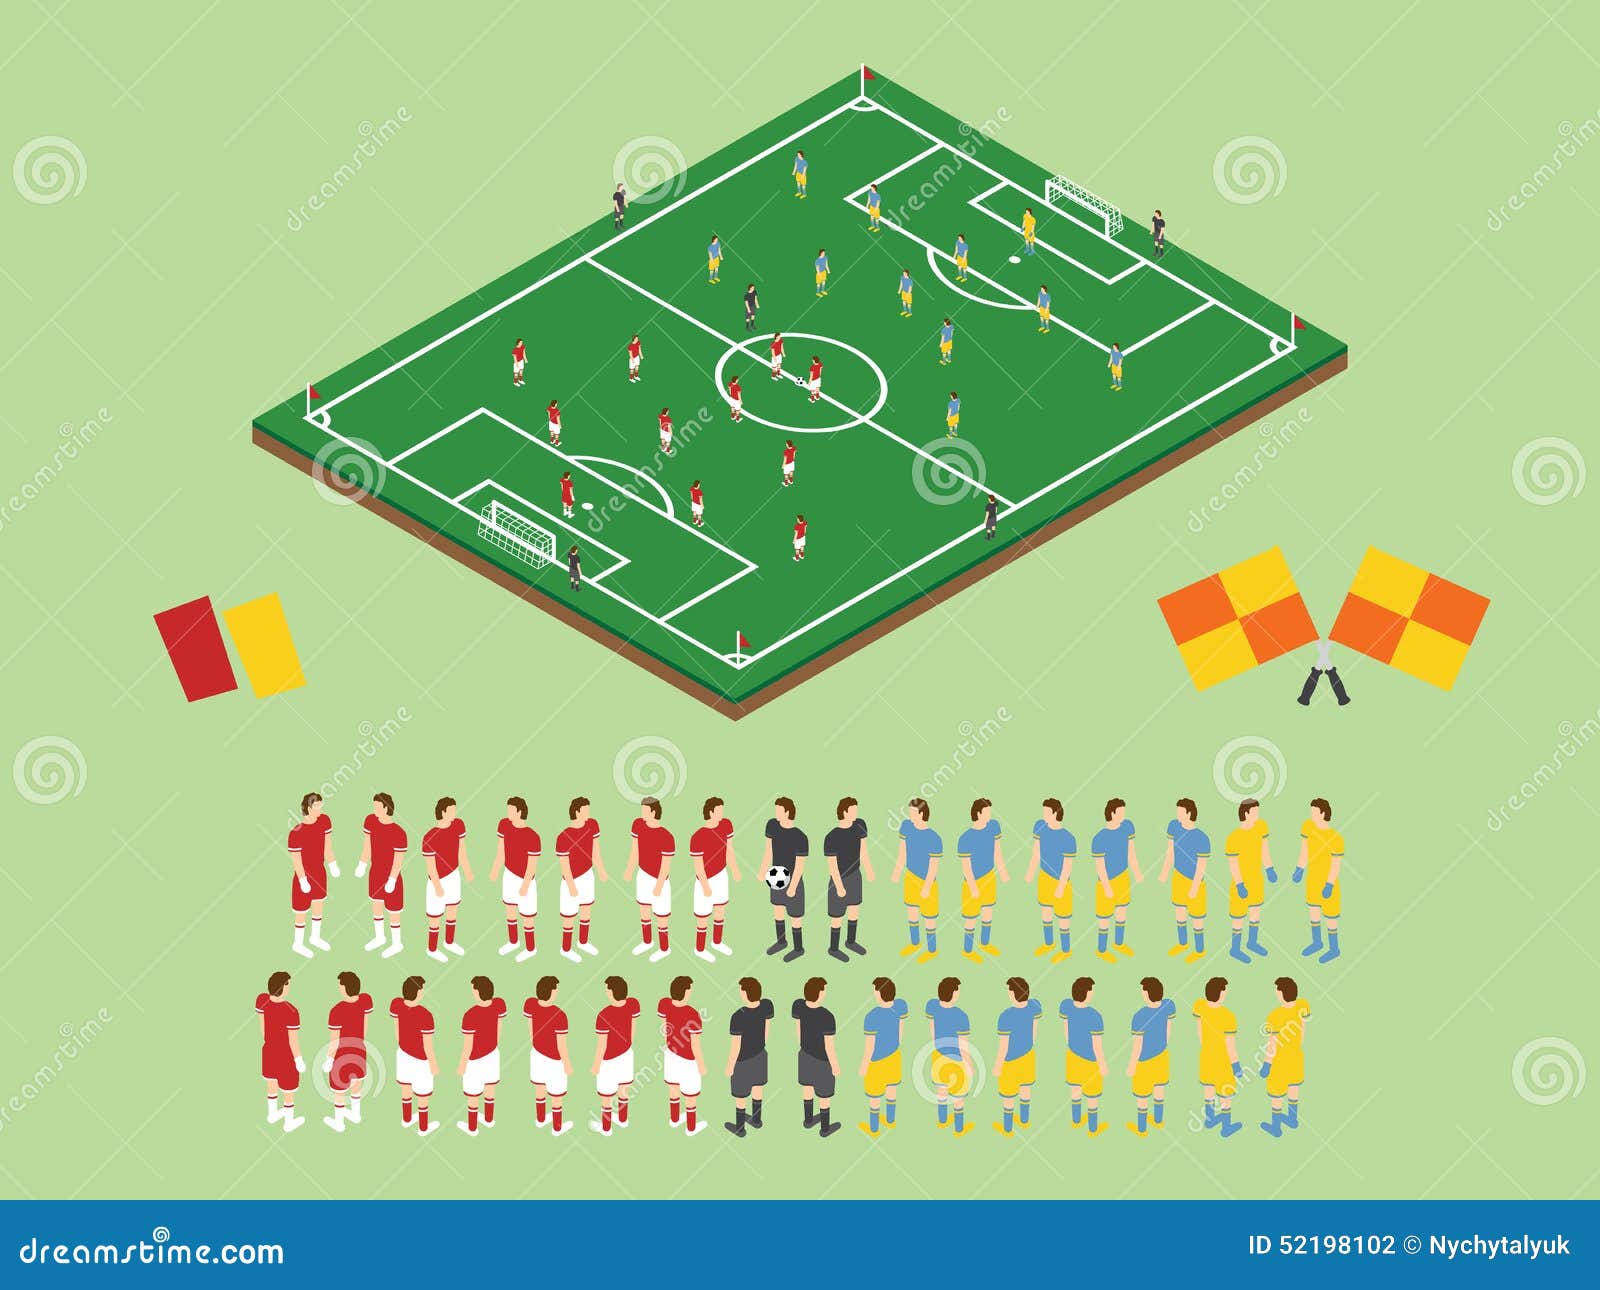 Επίπεδος πίνακας τακτικής ποδοσφαίρου ύφους επίσης corel σύρετε το διάνυσμα απεικόνισης Isometric τομέας και ποδοσφαιριστές άποψης